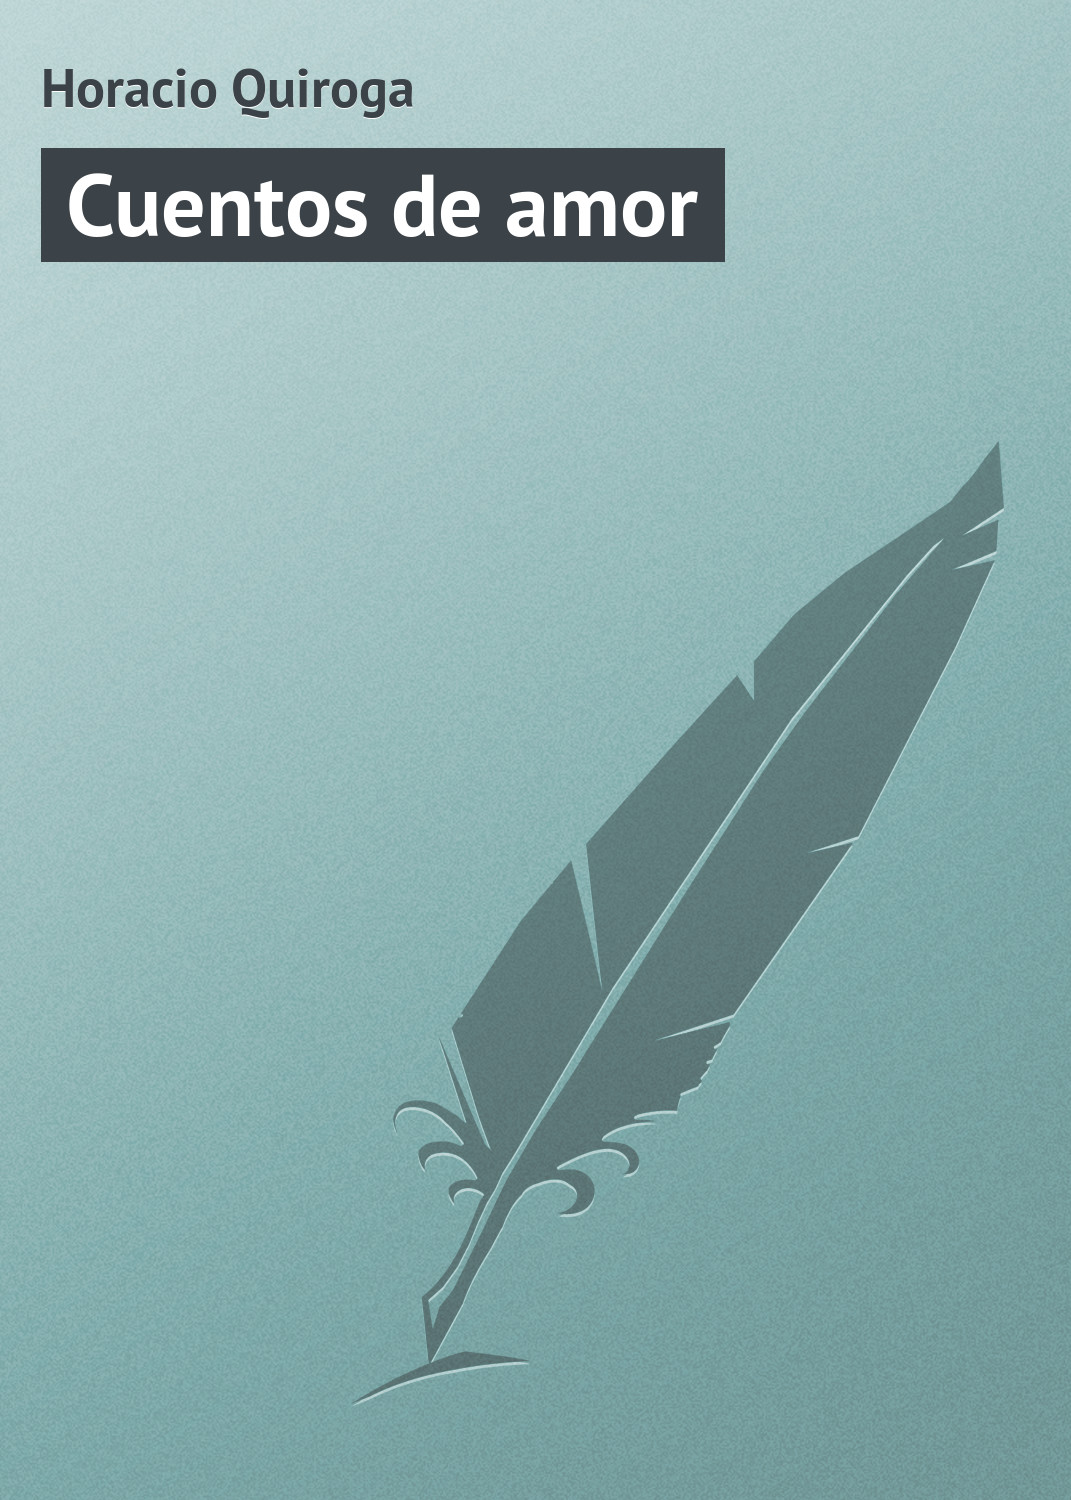 Книга Cuentos de amor из серии , созданная Horacio Quiroga, может относится к жанру Зарубежная старинная литература, Зарубежная классика. Стоимость электронной книги Cuentos de amor с идентификатором 21107646 составляет 5.99 руб.